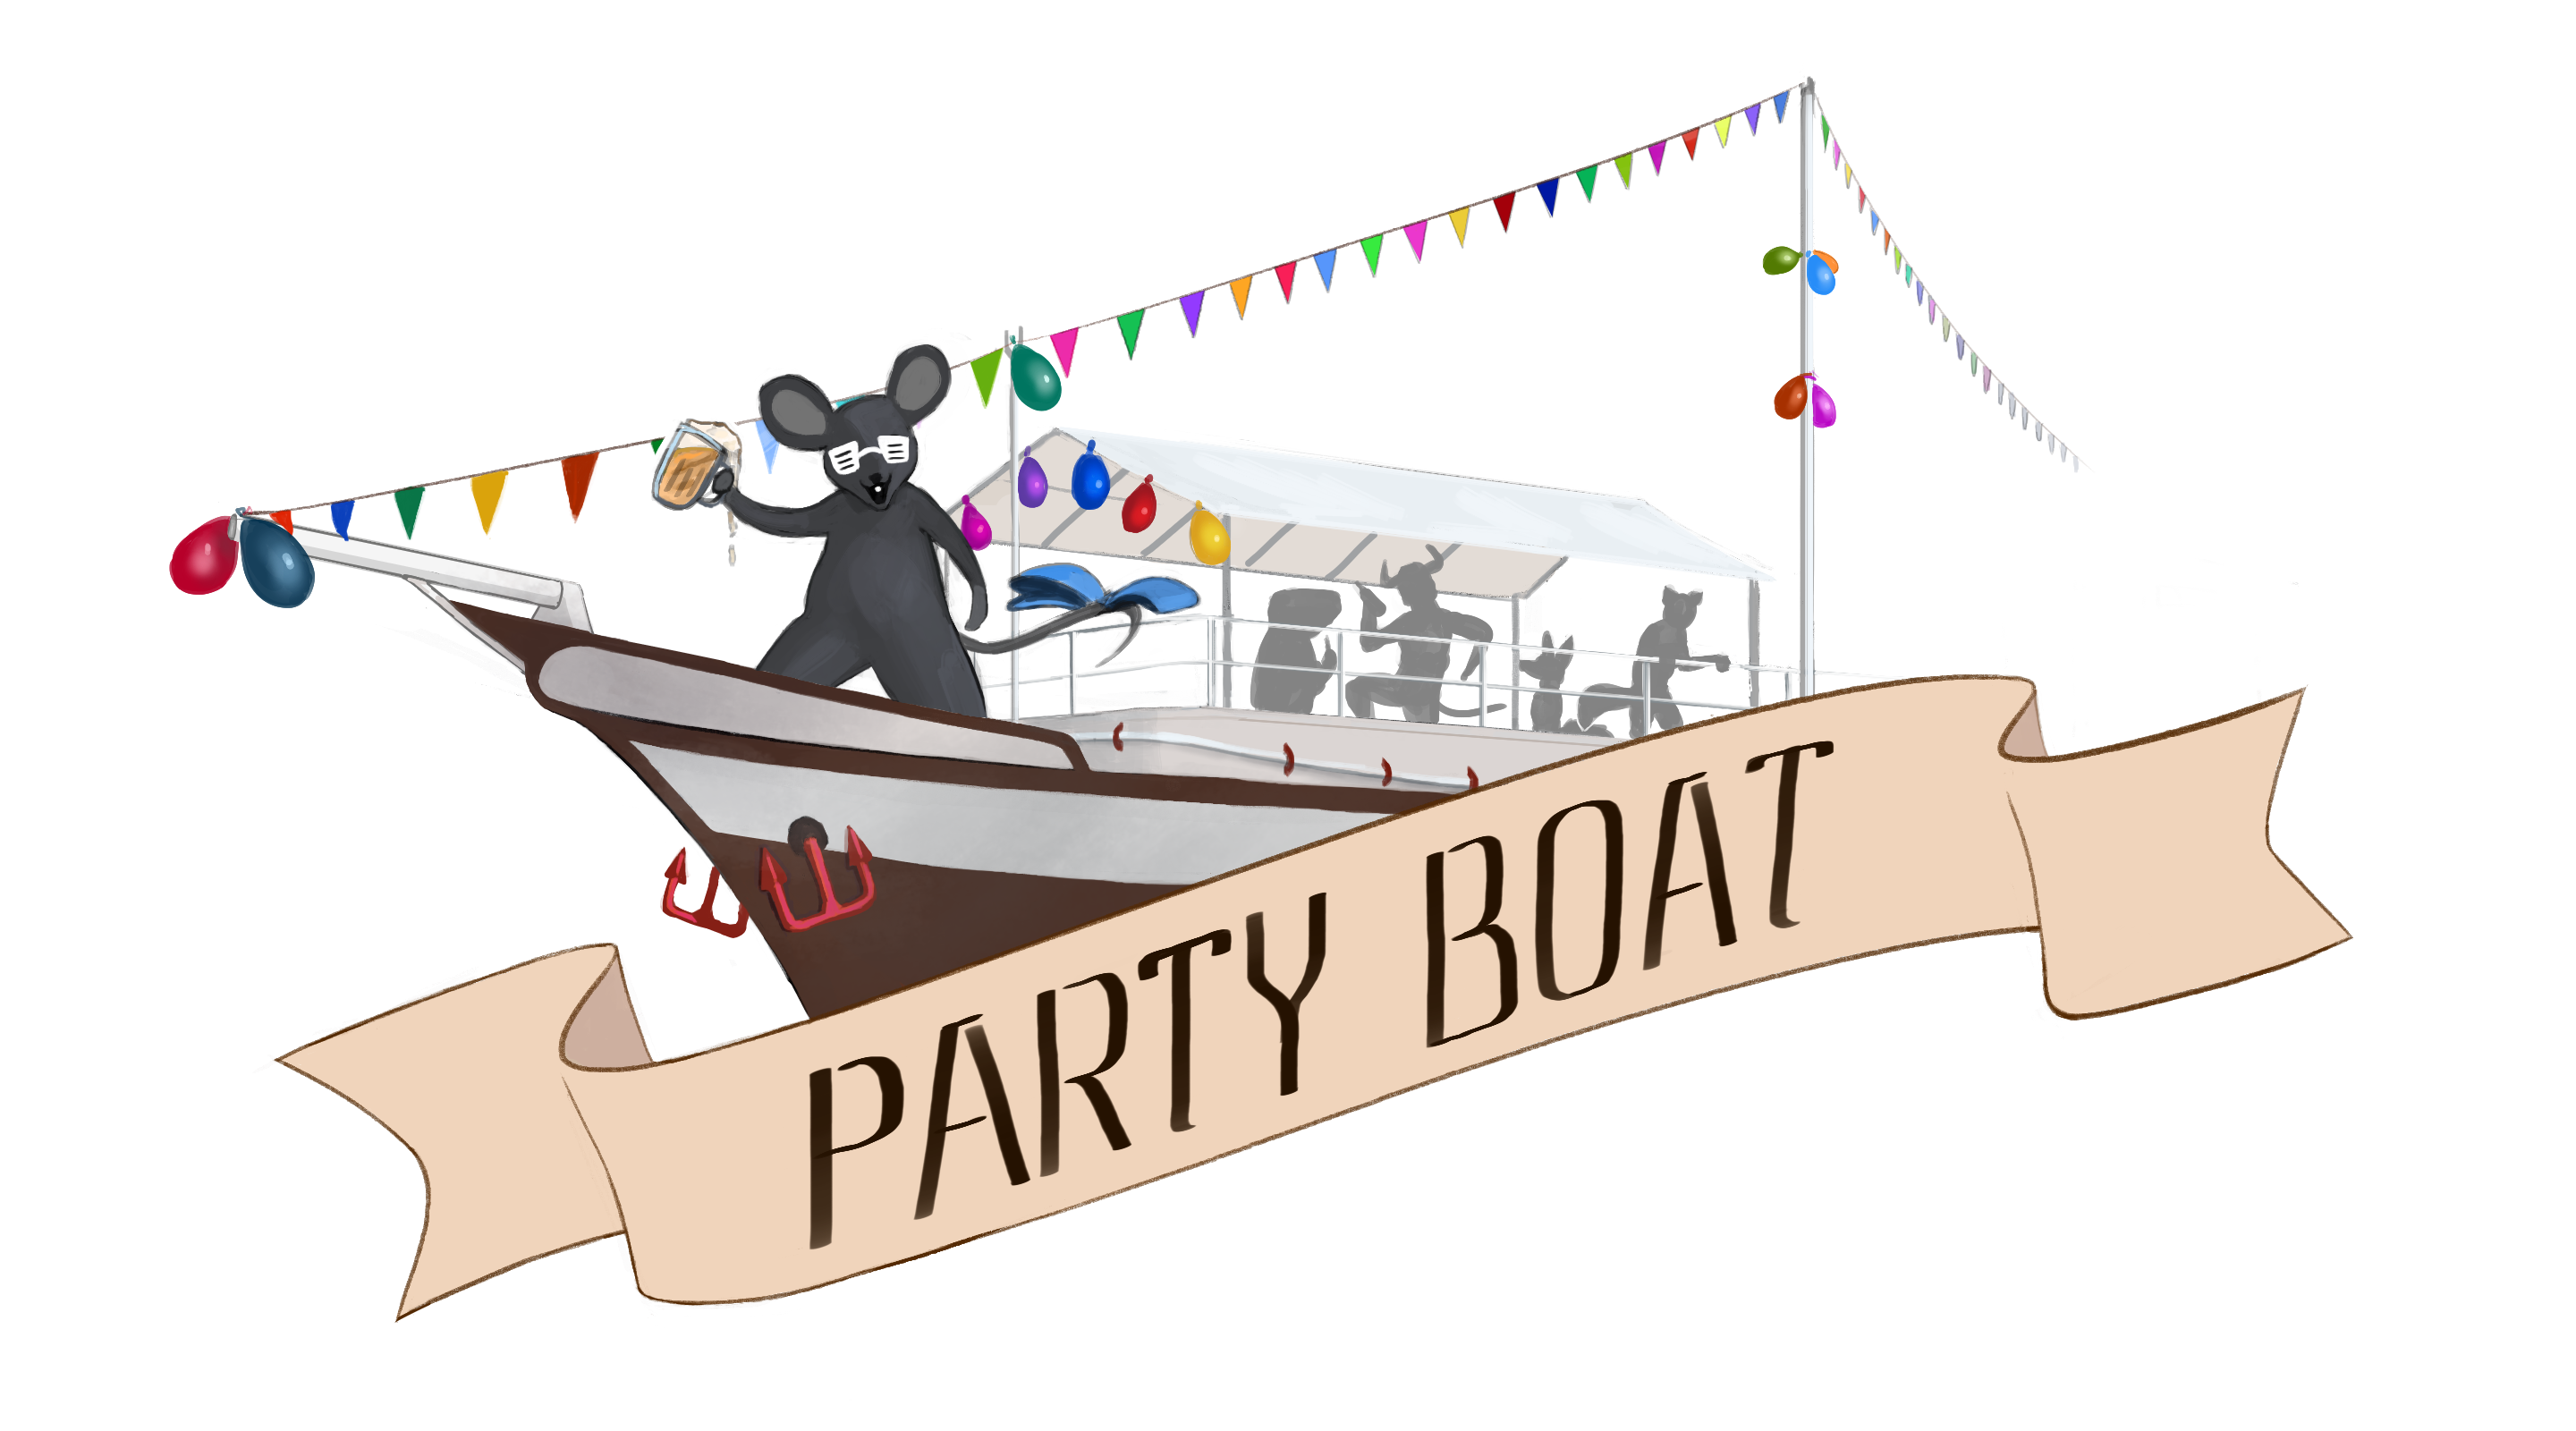 Party Boat logo